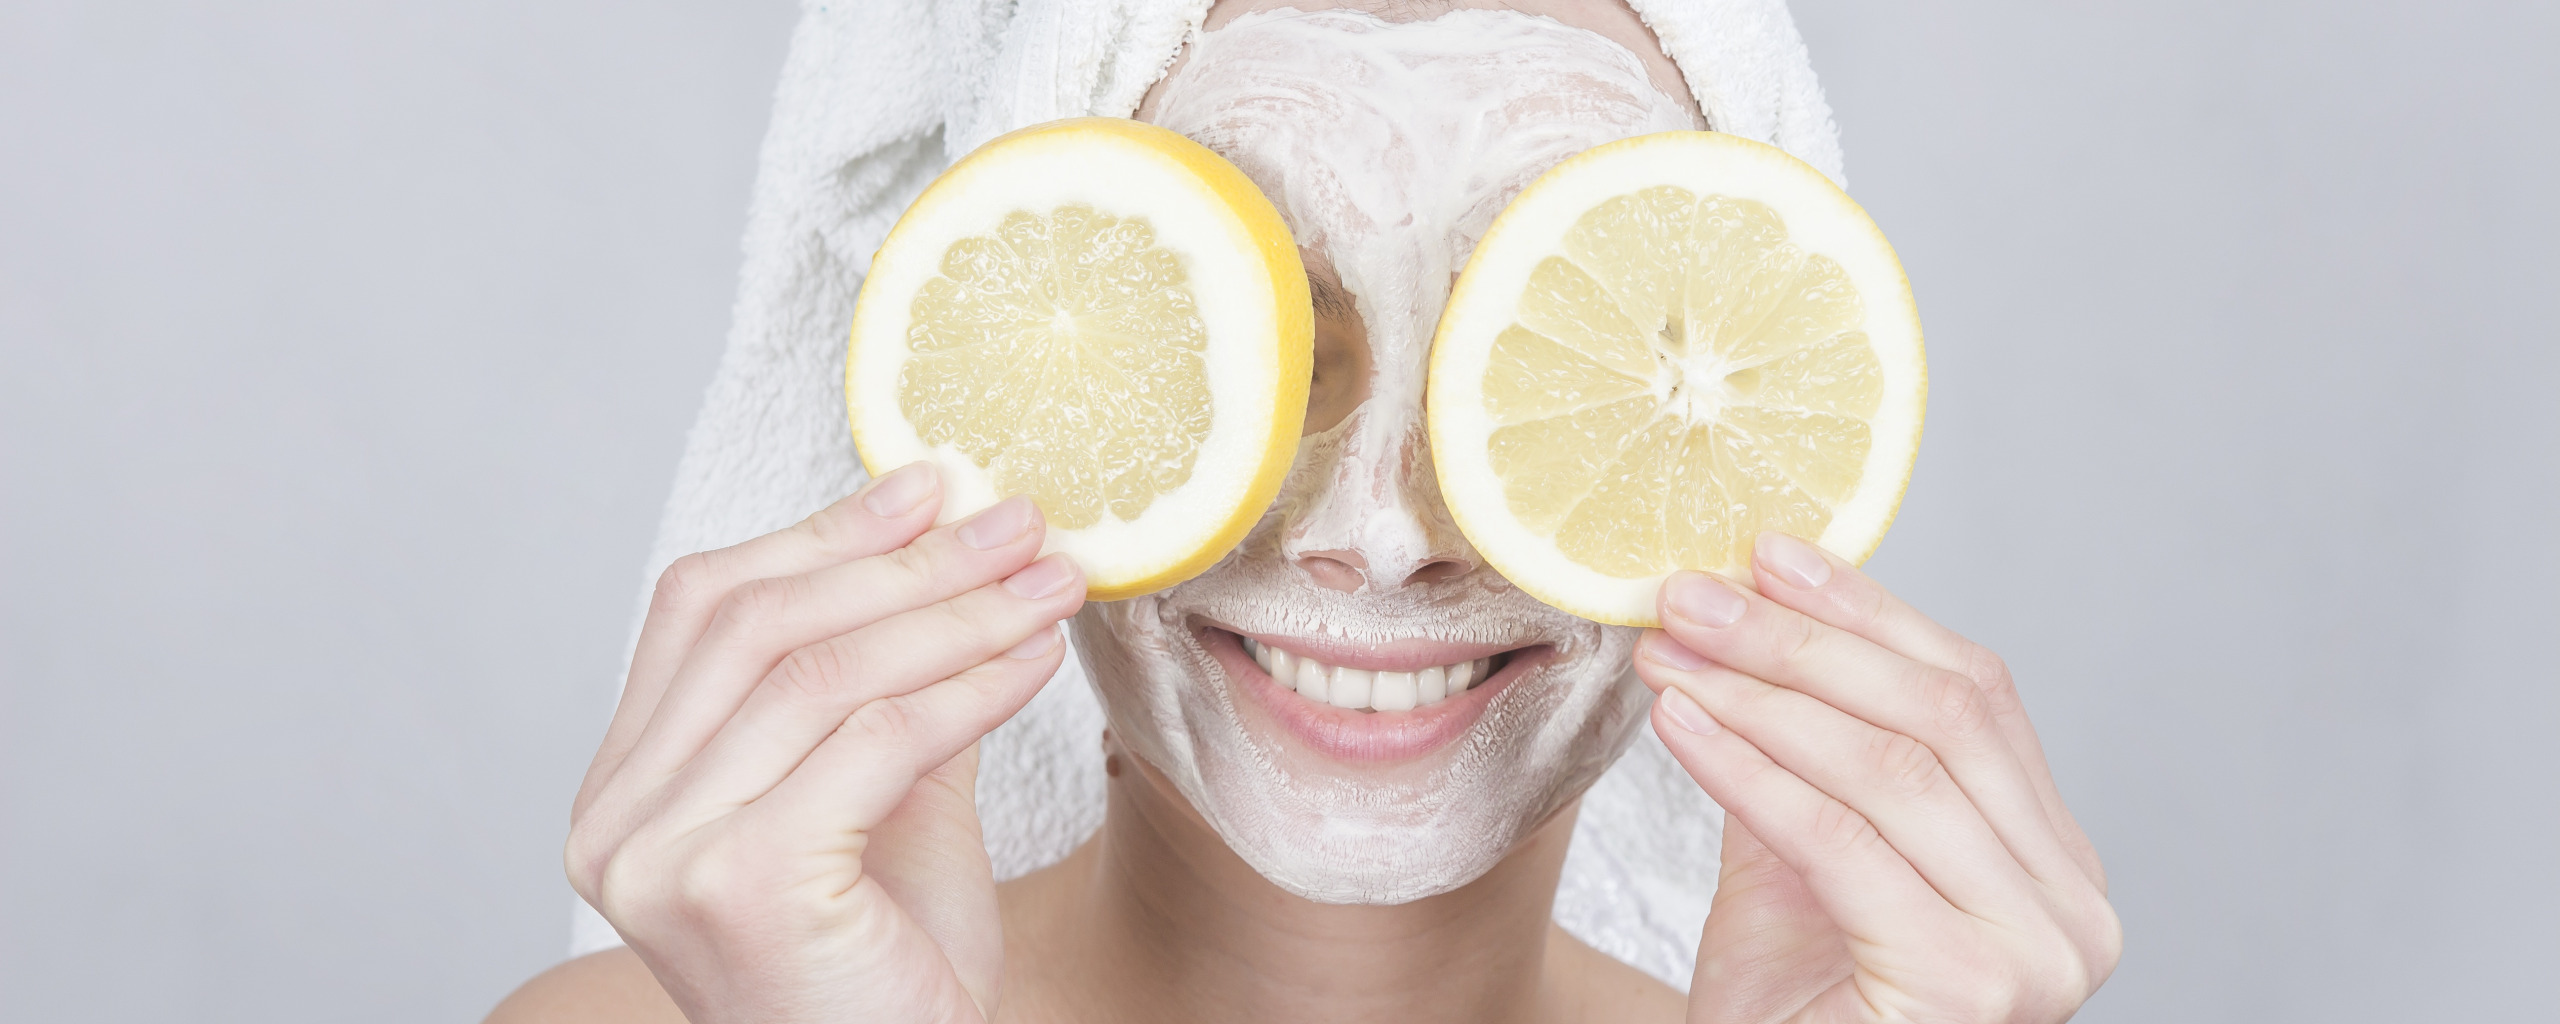 Домашние маски с лимоном. Лимонная маска для лица. Лимон с лицом. Лимон для красоты. Маска очищение натуральная.